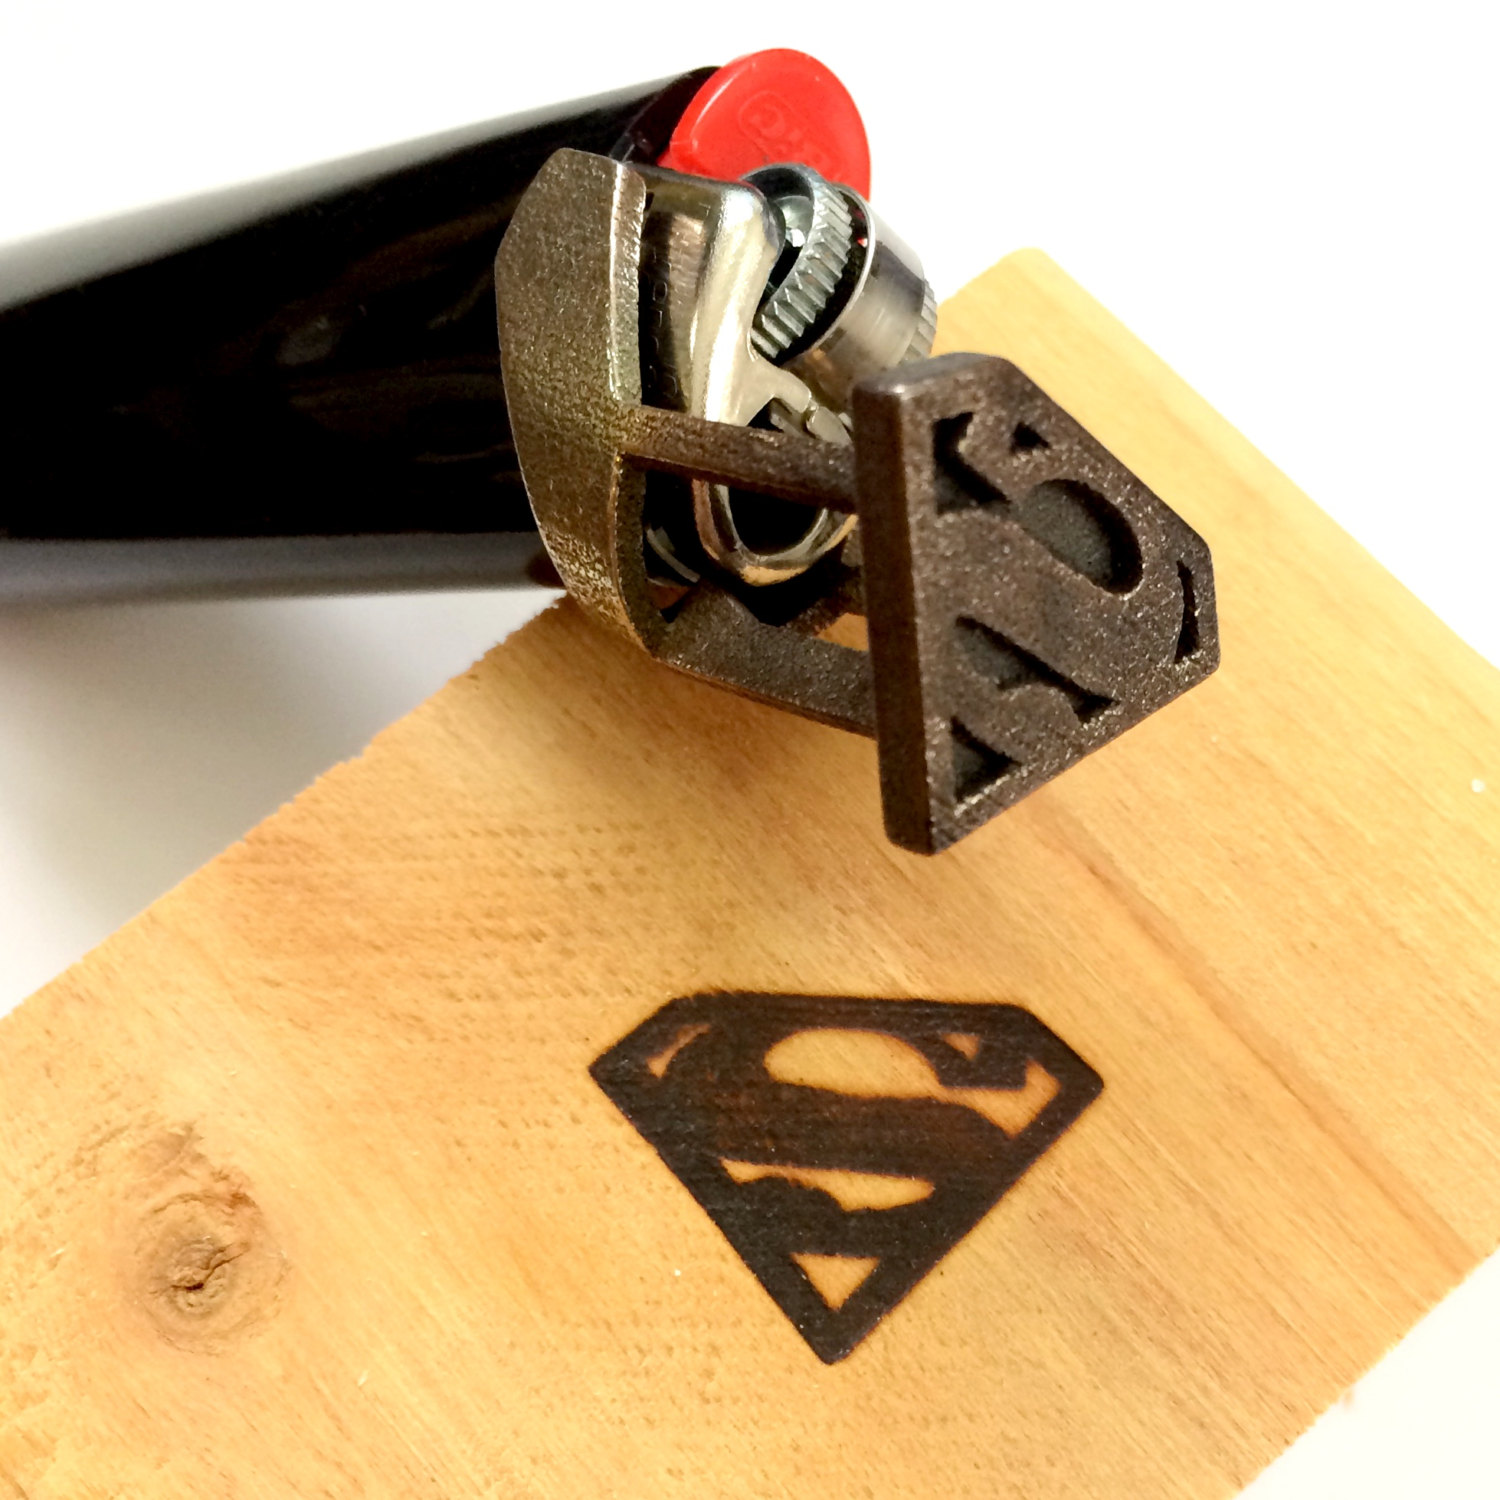 Superman branding iron / Boing Boing